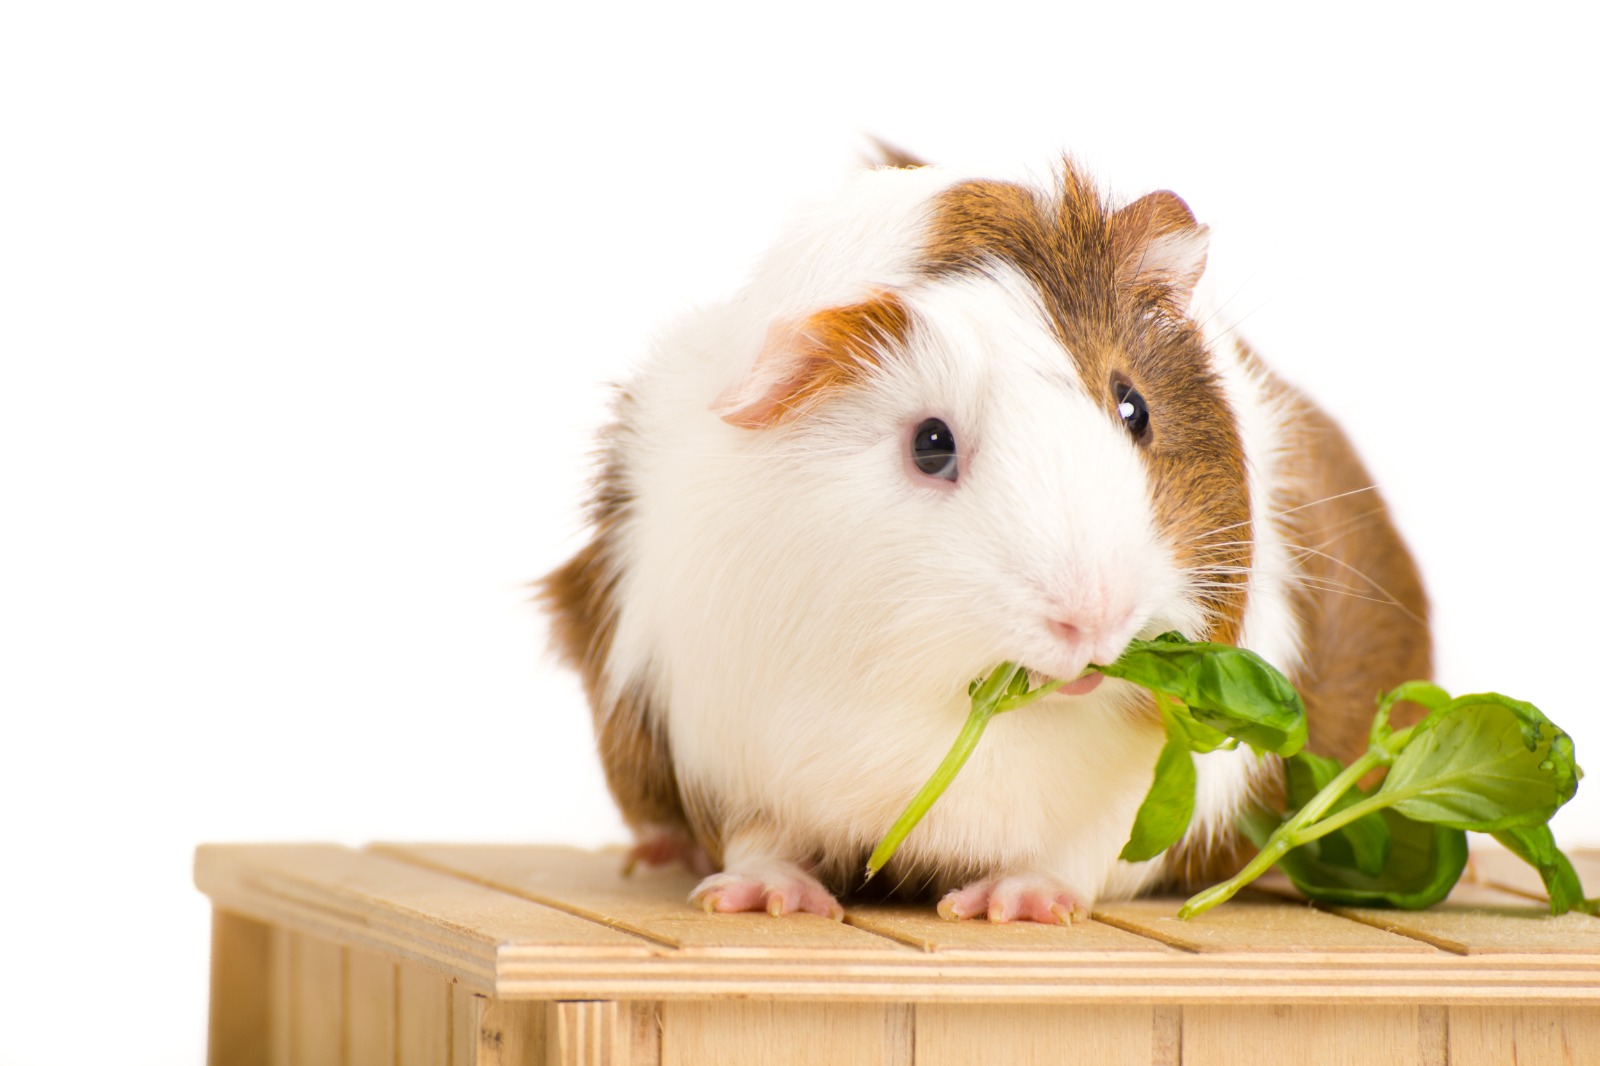 Mamíferos pequeños como ratón, hámster y cuyo deben tener cuidados específicos como mascotas. (Foto Prensa Libre, Shutterstock)